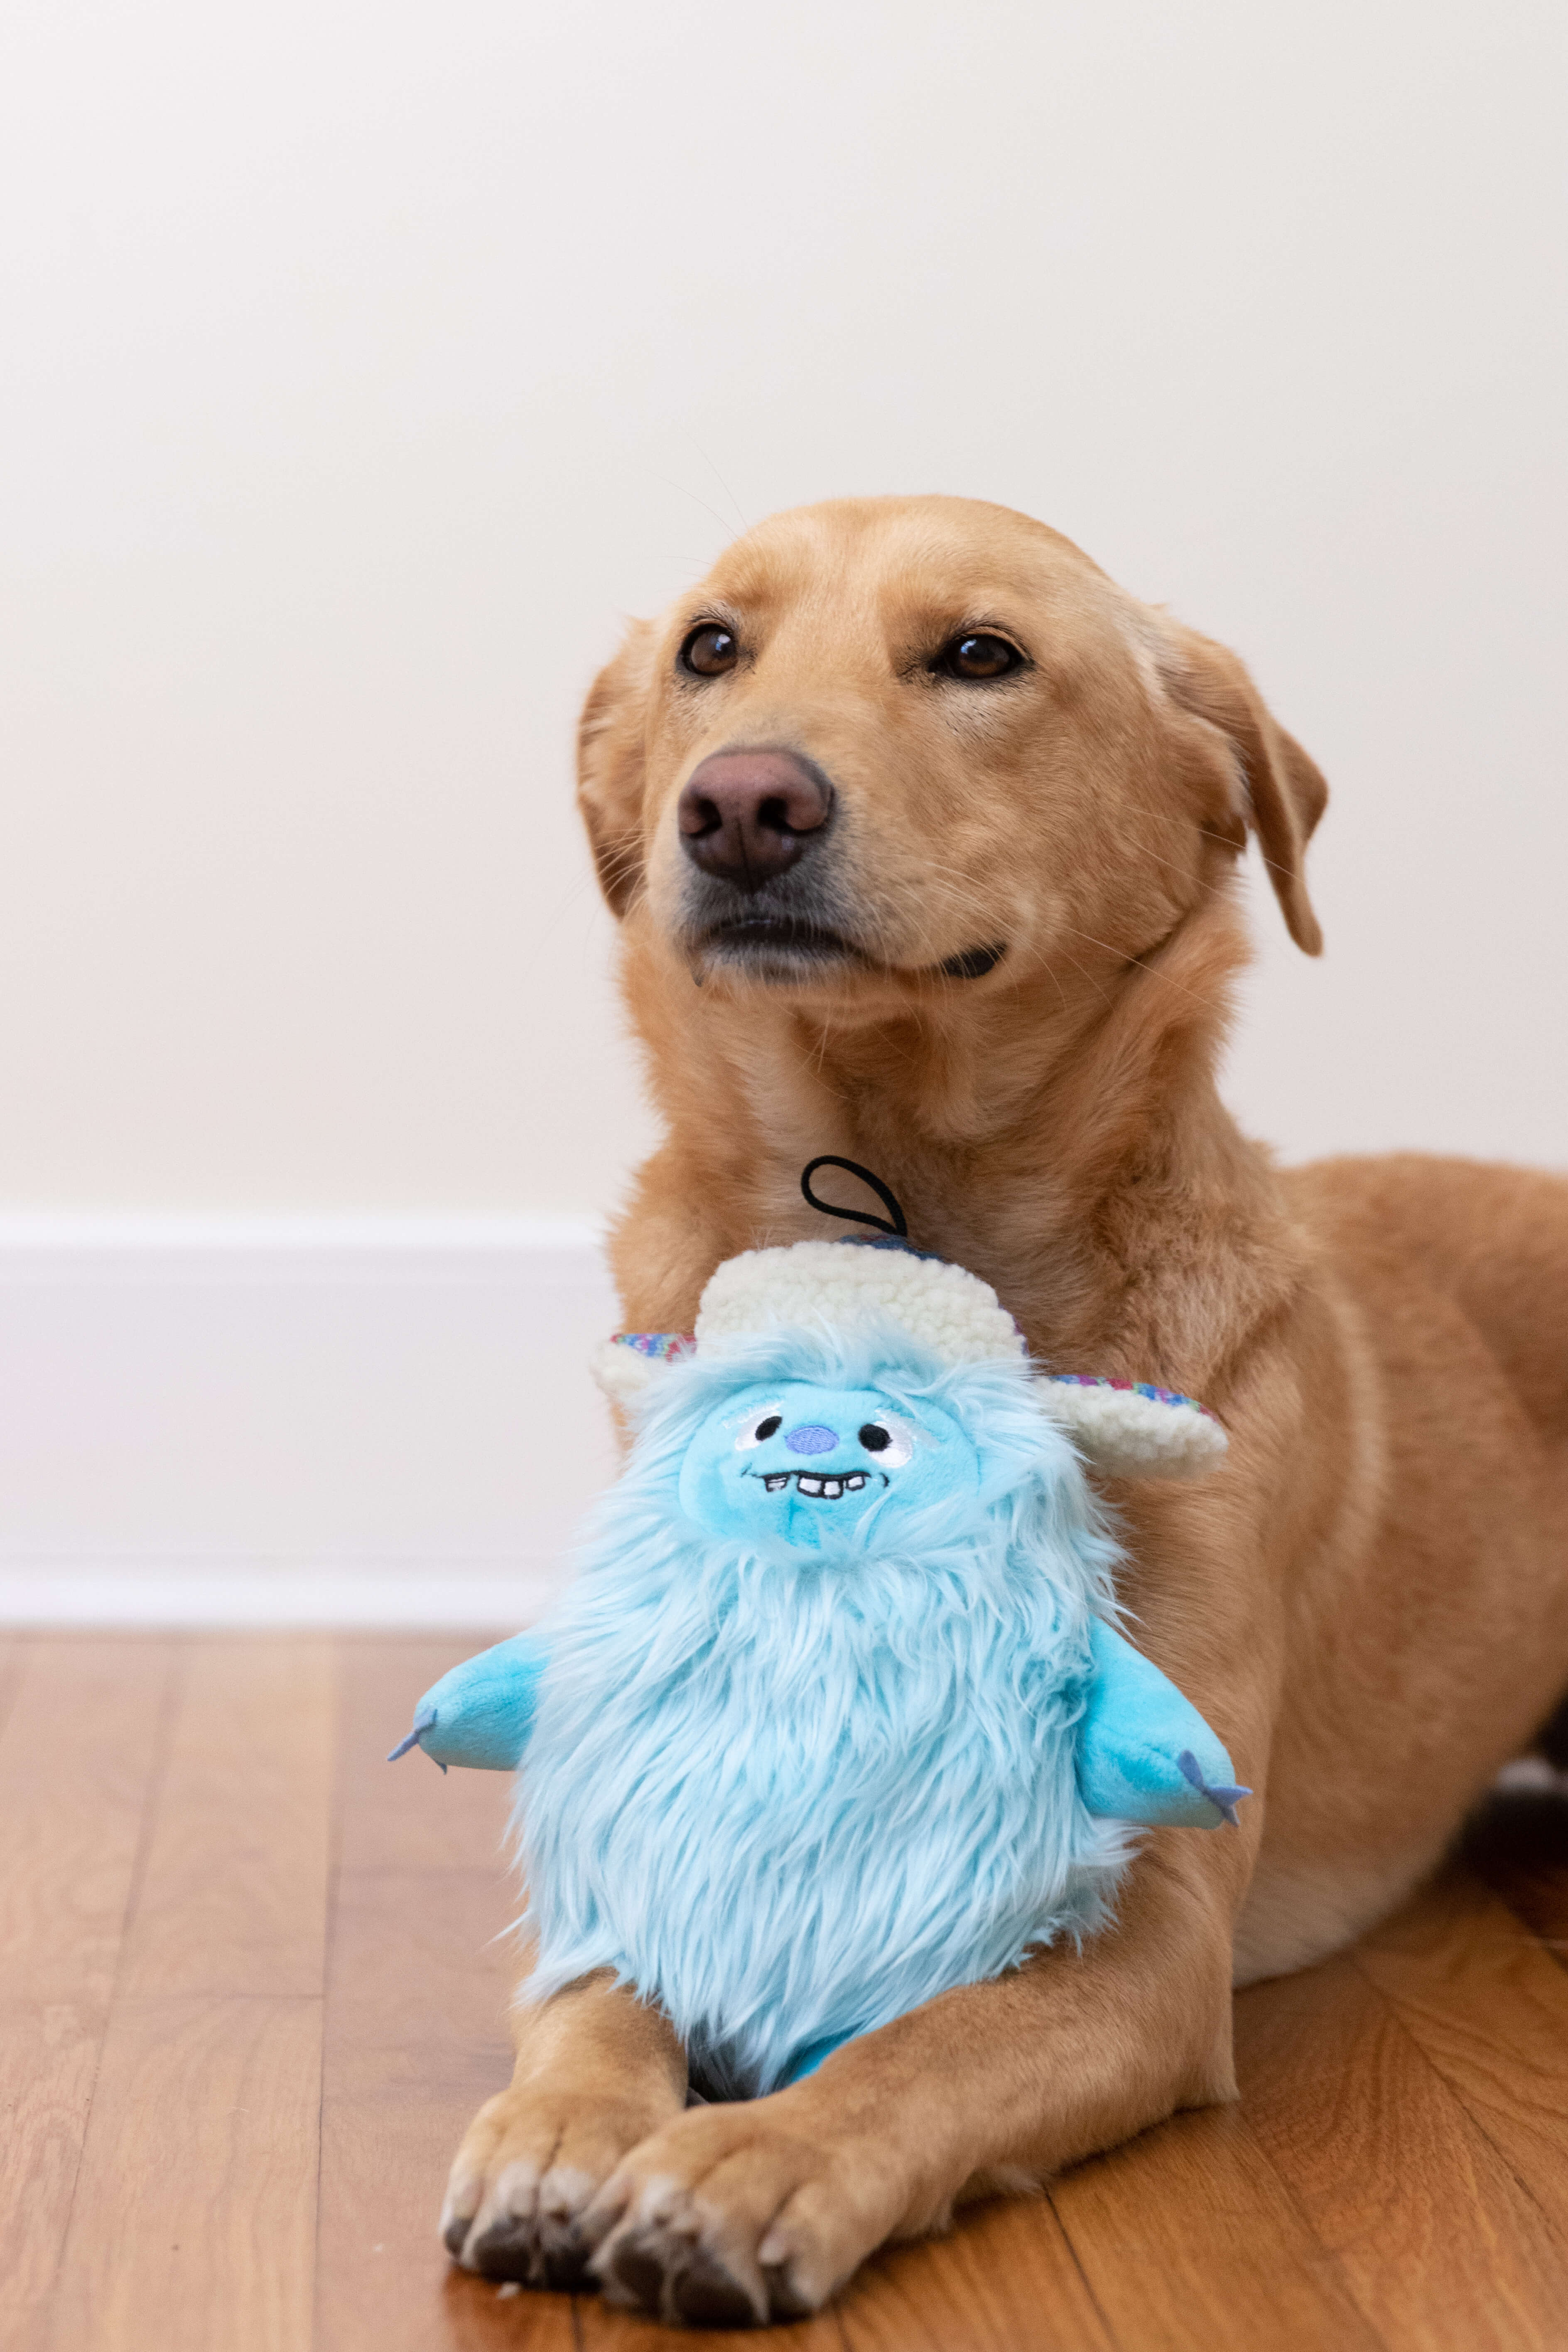 Dog posing with everest shaggy yeti